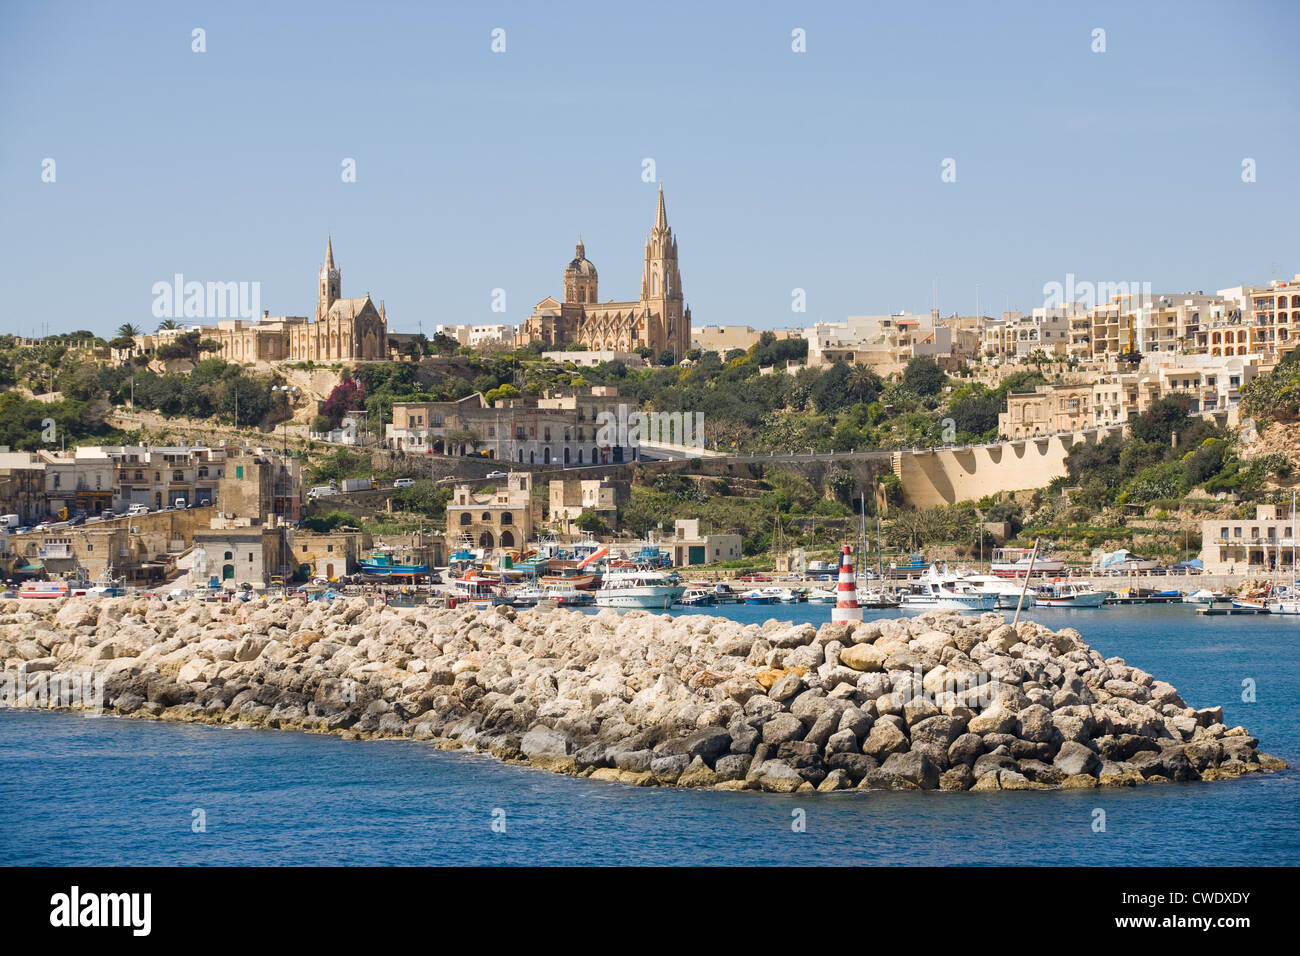 Europa, la isla de Malta, Gozo, Ghajnsielem ciudad y puerto. Foto de stock